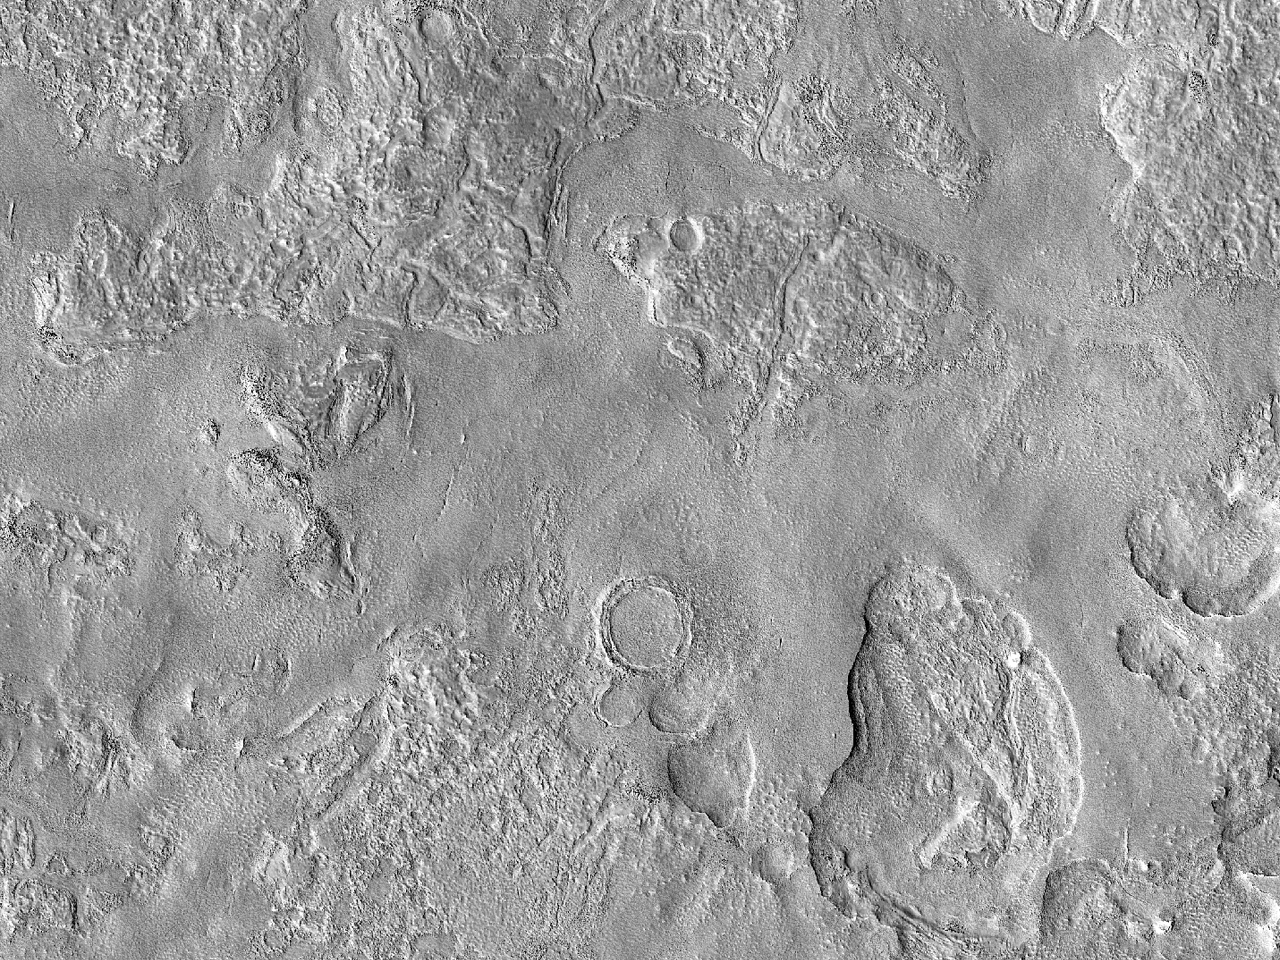 Στικτό και ανάγλυφο Έδαφος στην Πεδιάδα της Ουτοπίας (Utopia Planitia)